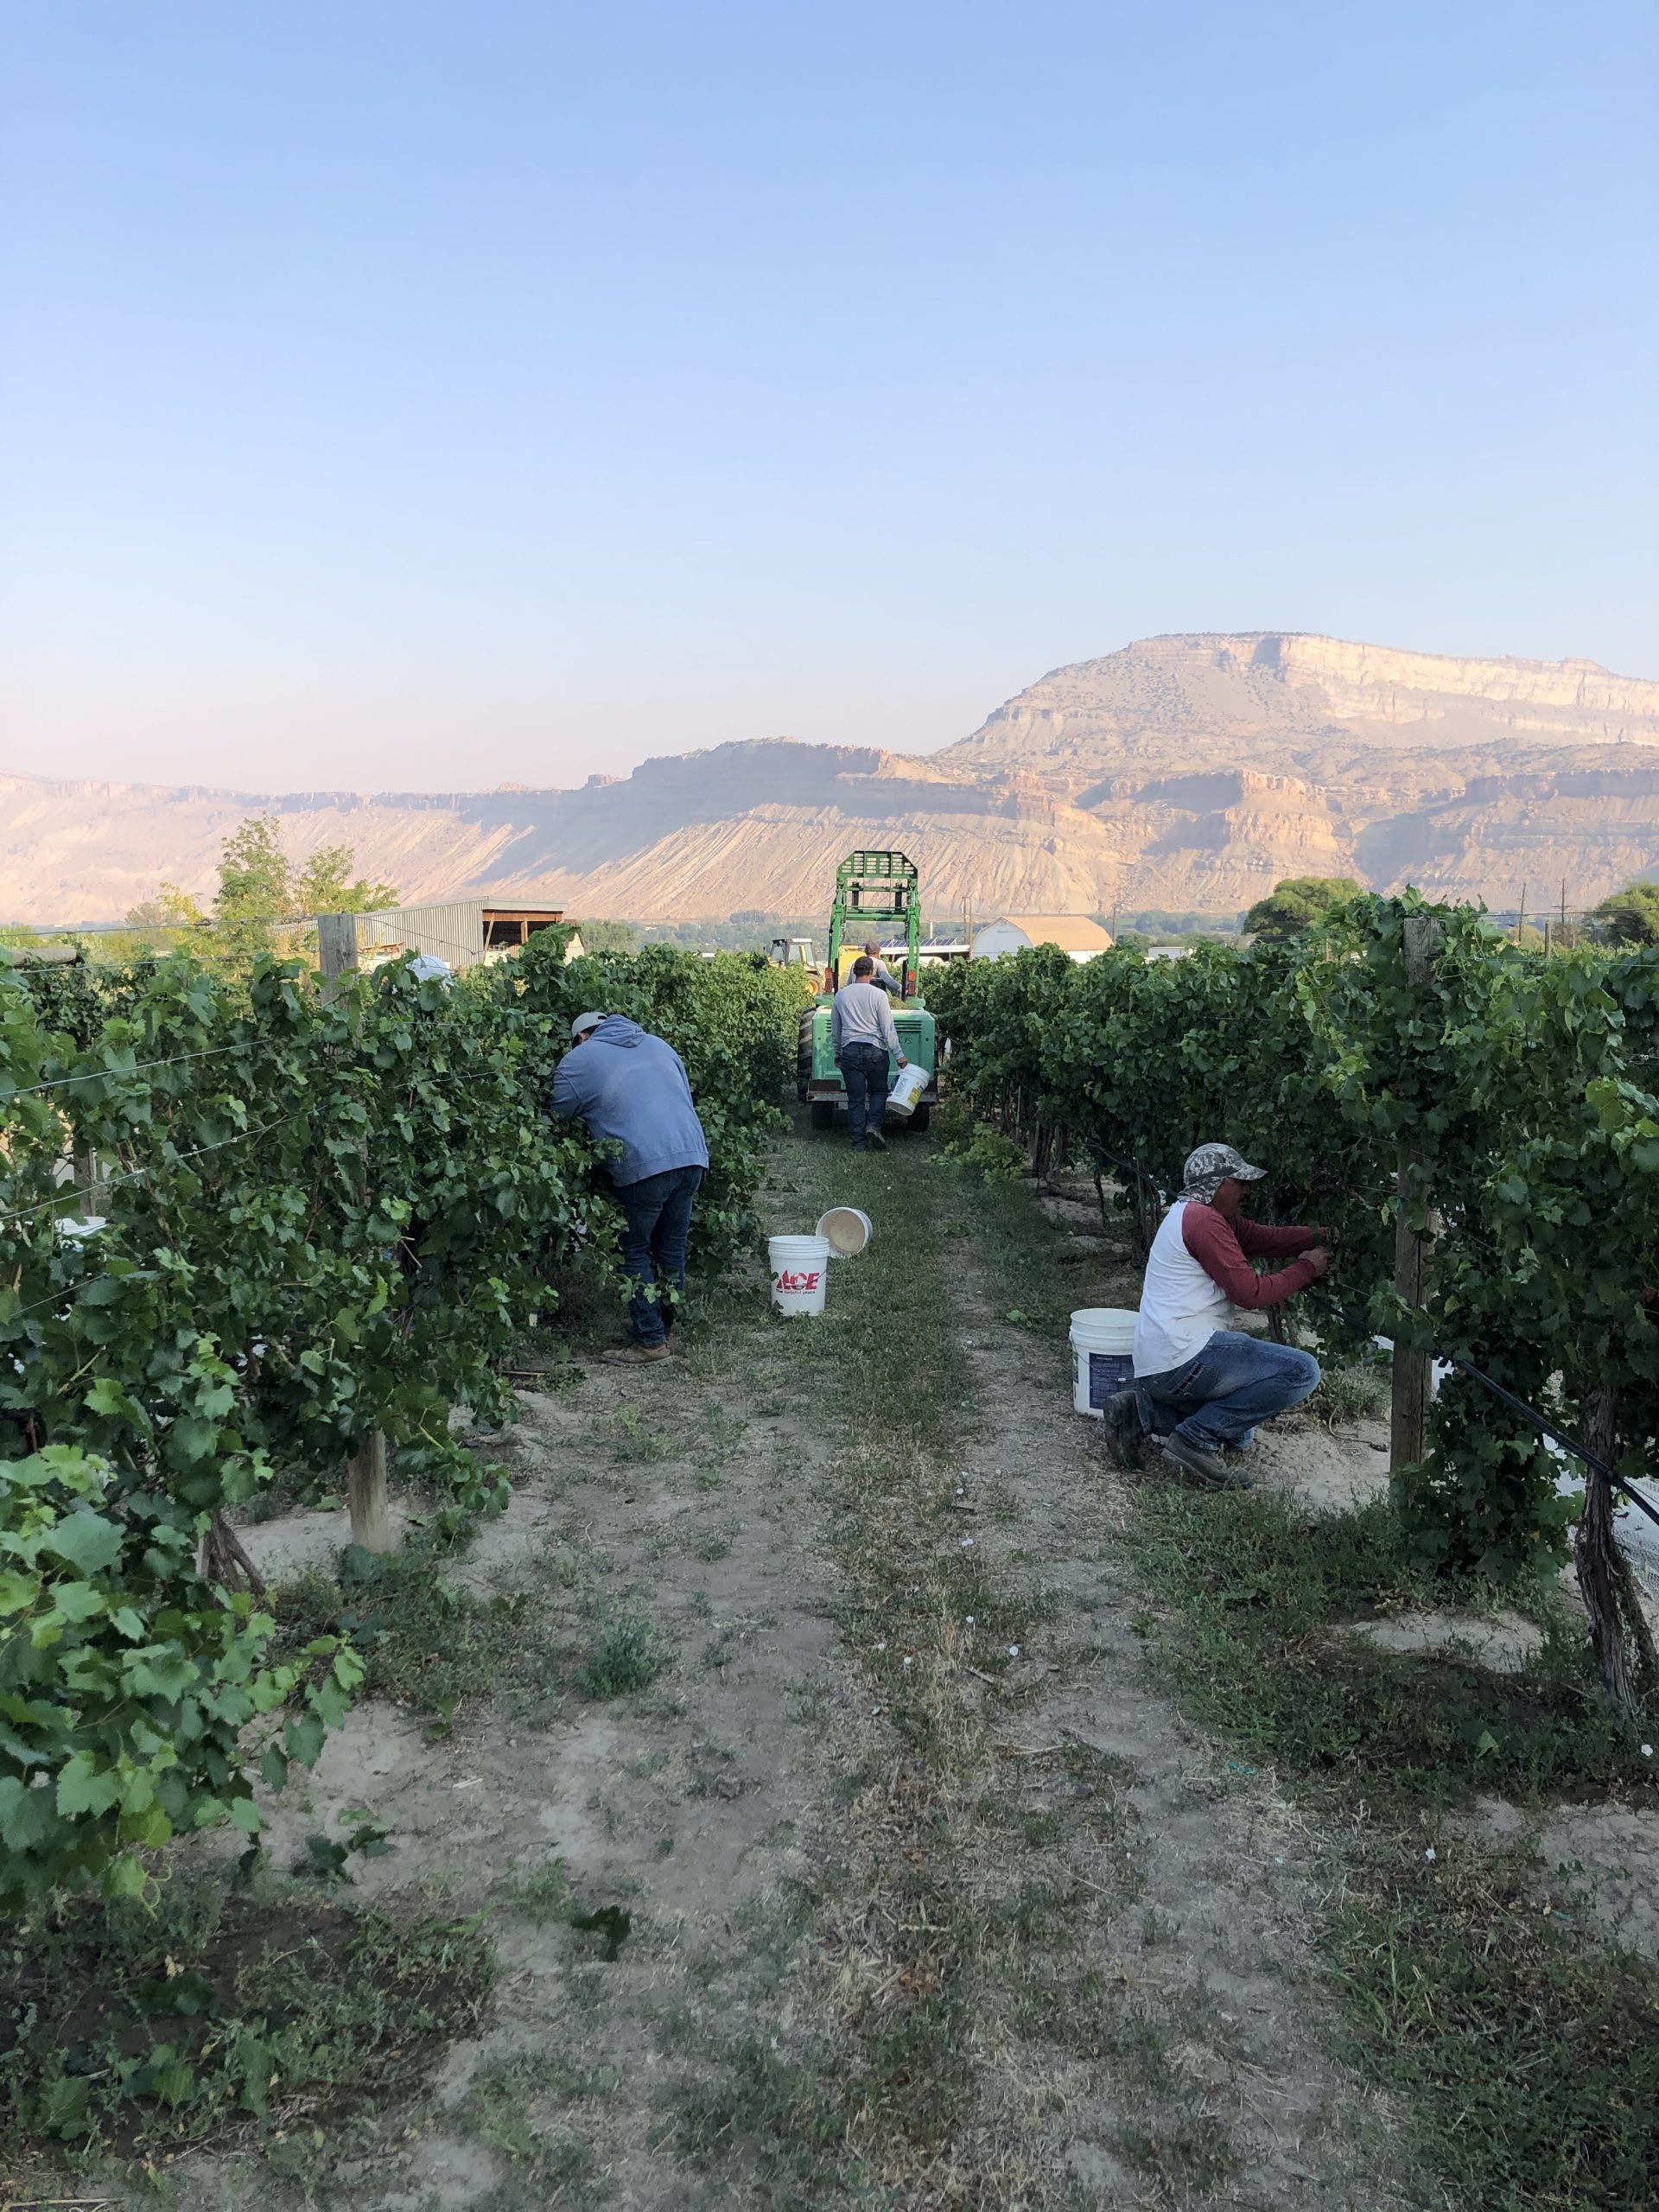 Harvesting vineyards owned by Colorado Vineyard Specialist in mid-August 